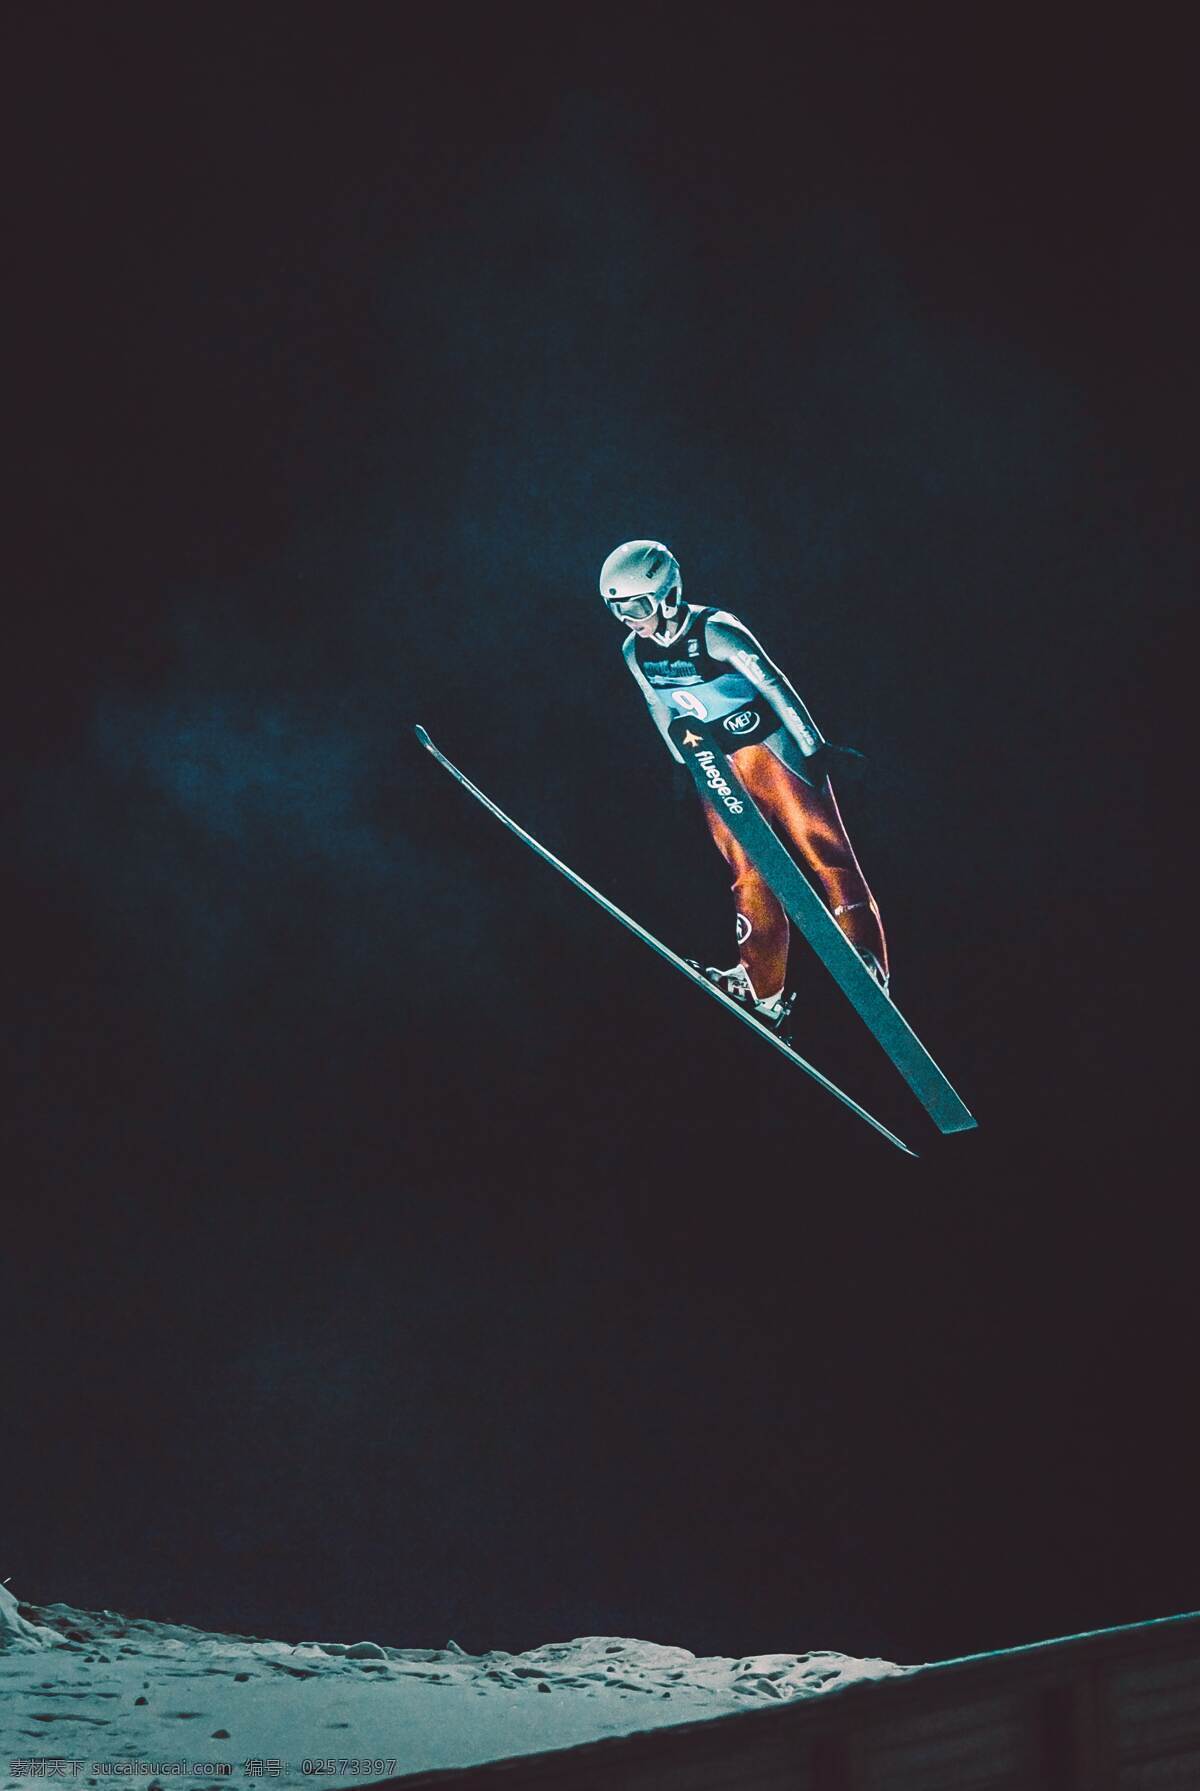 跳台滑雪 跳台 滑雪 欧美 户外 夜晚 拍摄 摄影类 文化艺术 体育运动